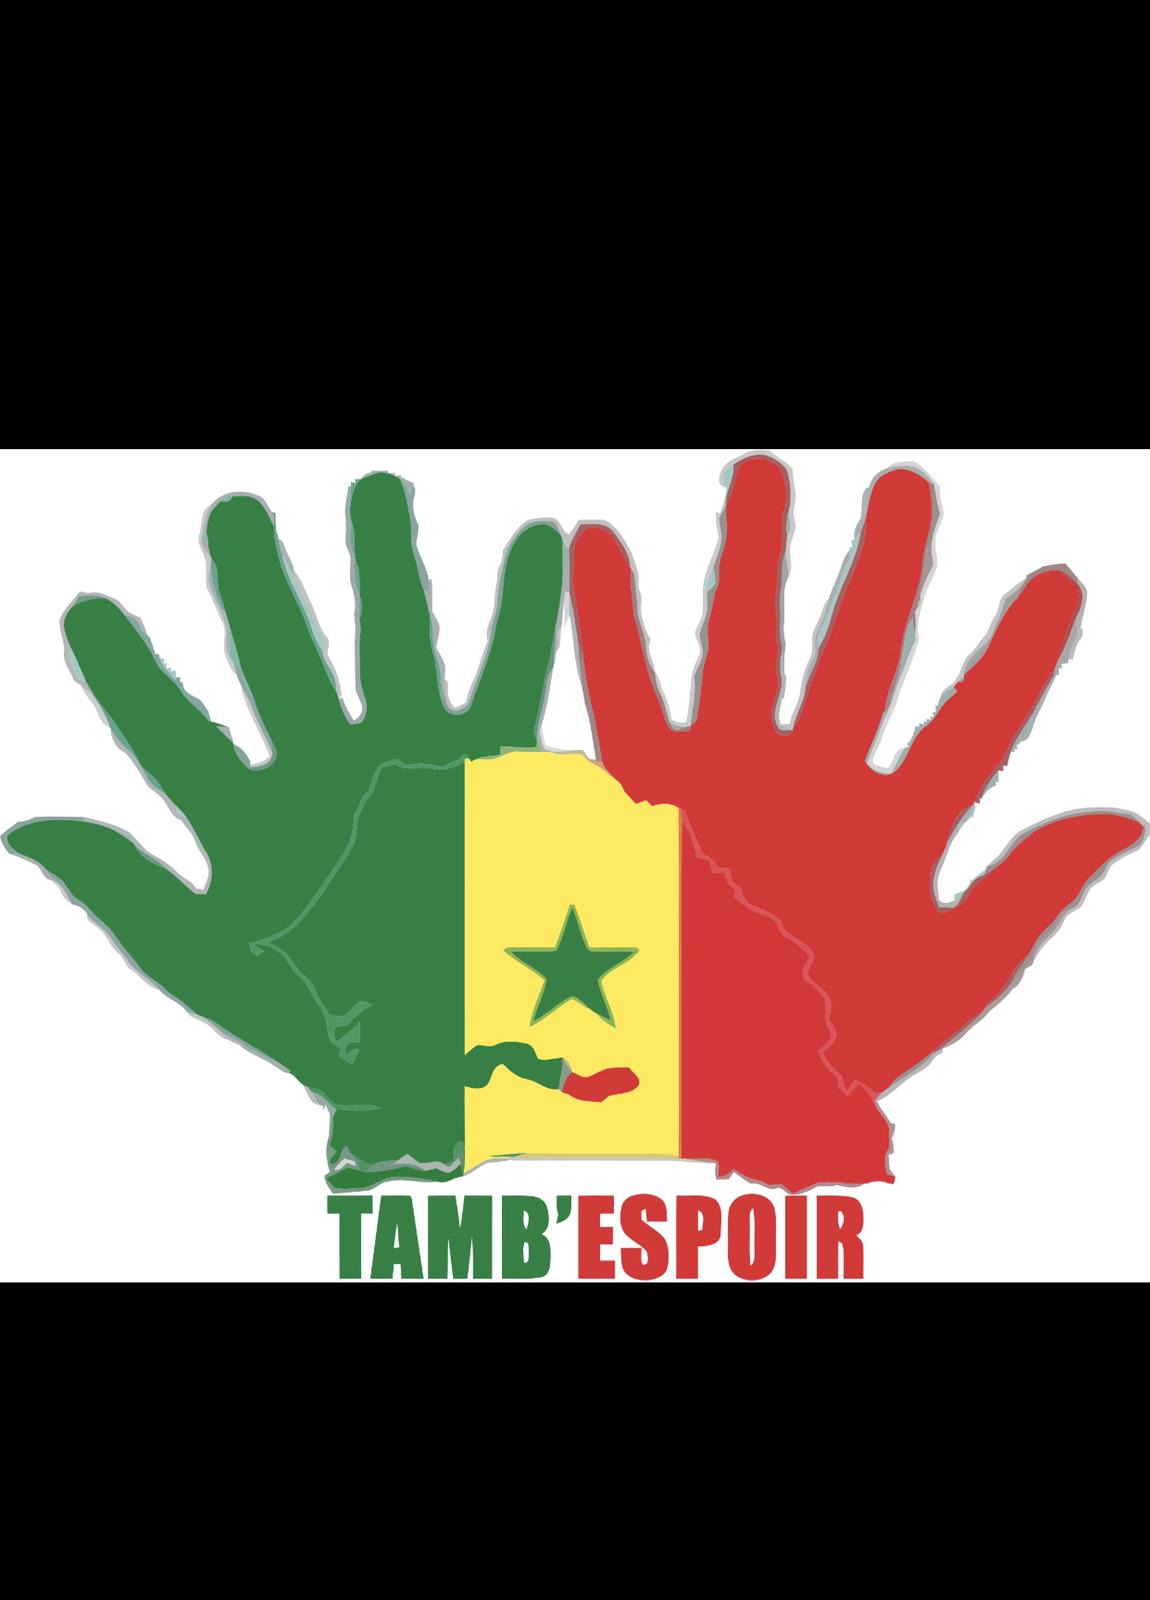 L’Enquête de suivi de la pauvreté au Sénégal (ESPS-2011) classe la région de Tambacounda parmi les régions où la pauvreté est très forte c’est-à-dire plus de 60 %